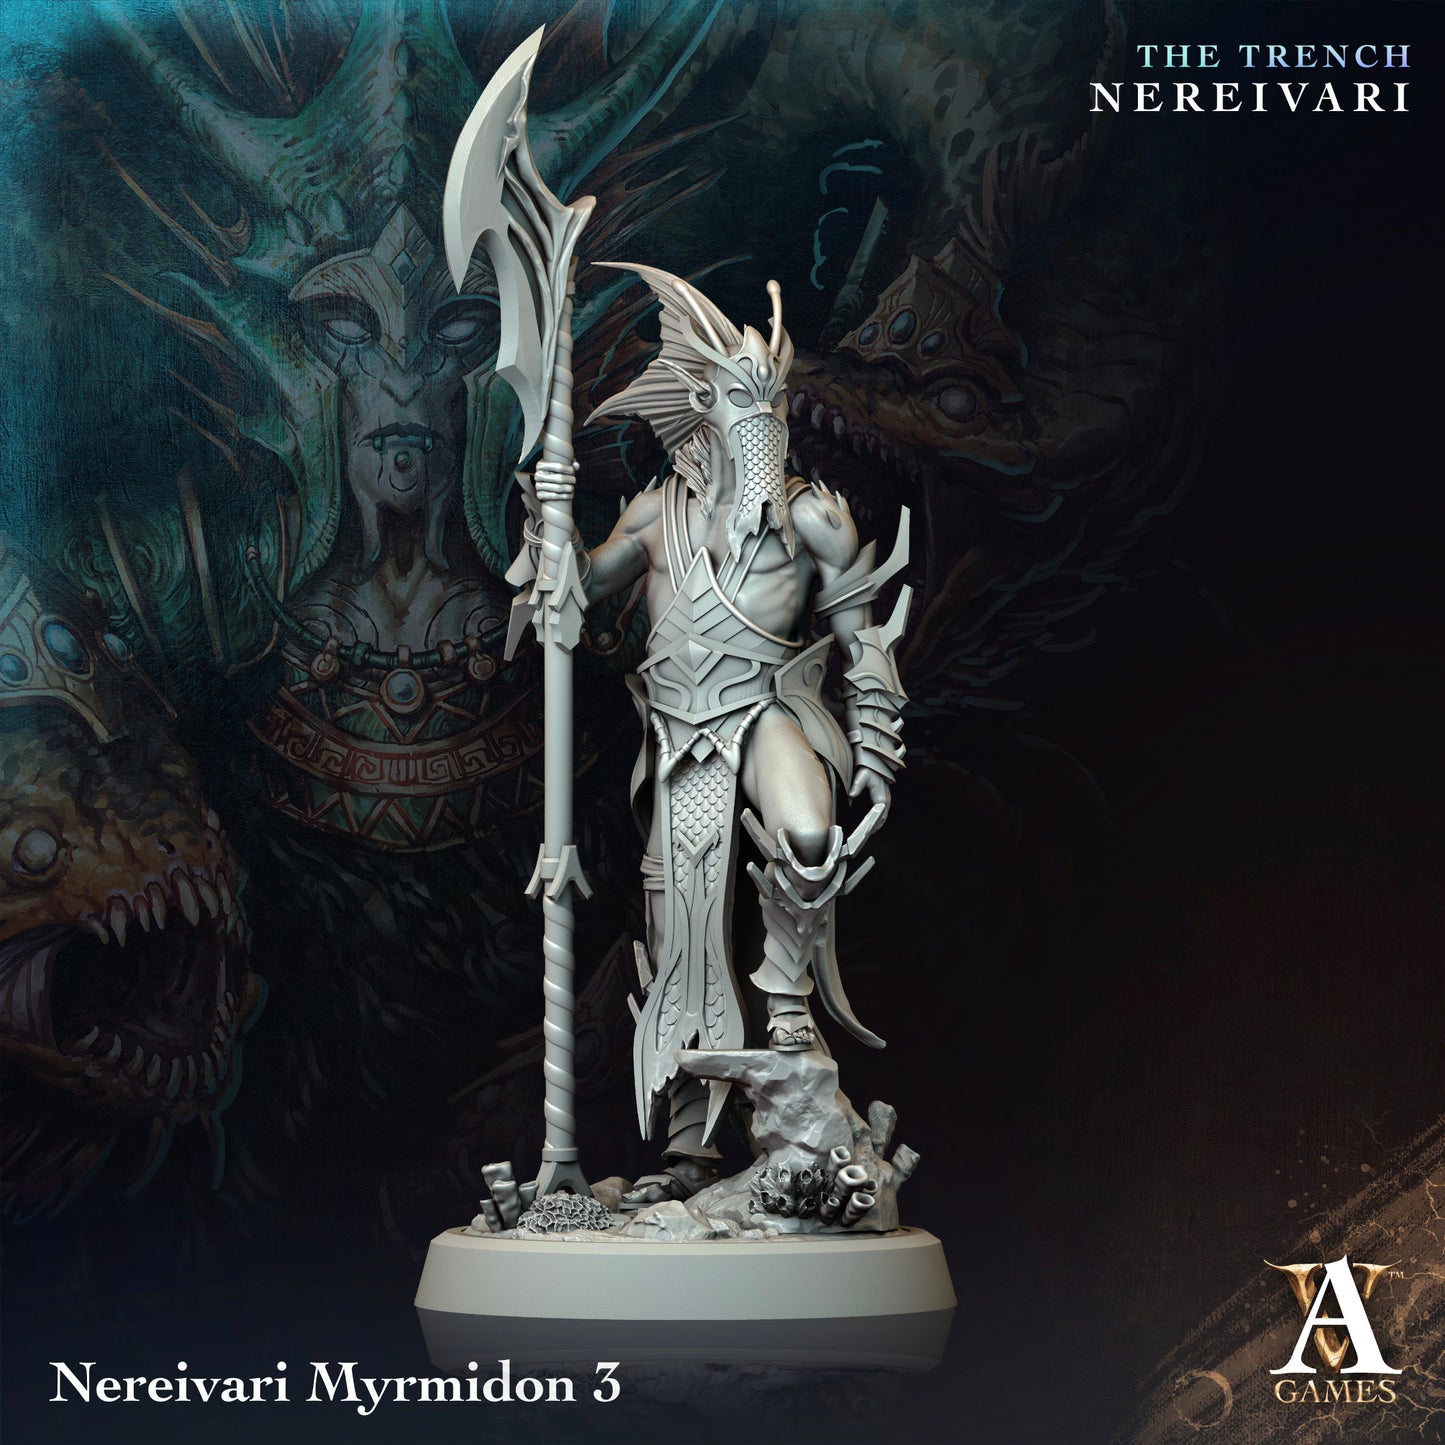 Nereivari Myrmidon -The Trench - Nereivari